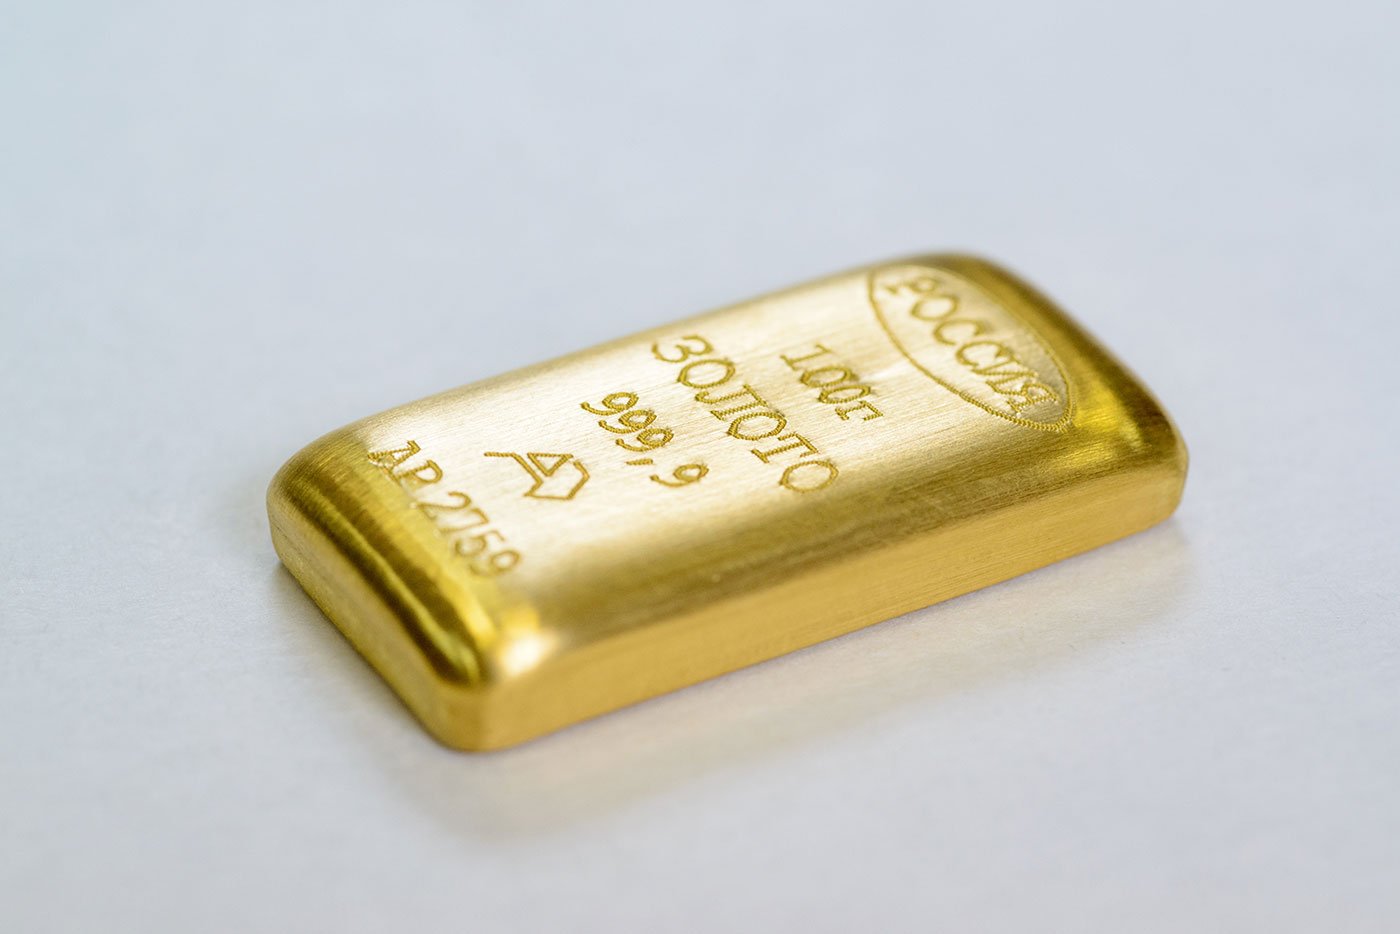 5 гр золота. 100 Граммовый слиток золота. Слиток 20 гр золота. Золото слиток 10гр. 10 Граммовый слиток золота.